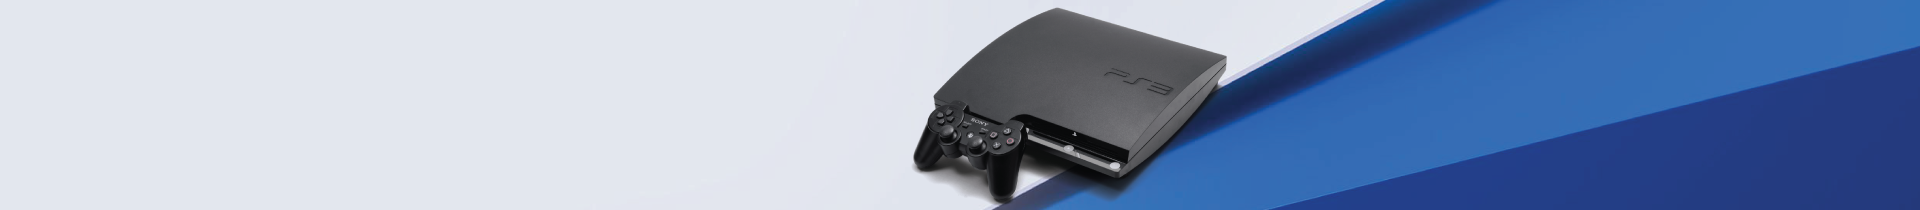 Consola PS3 | Jogos e Acessórios PS3 | PressStart.pt